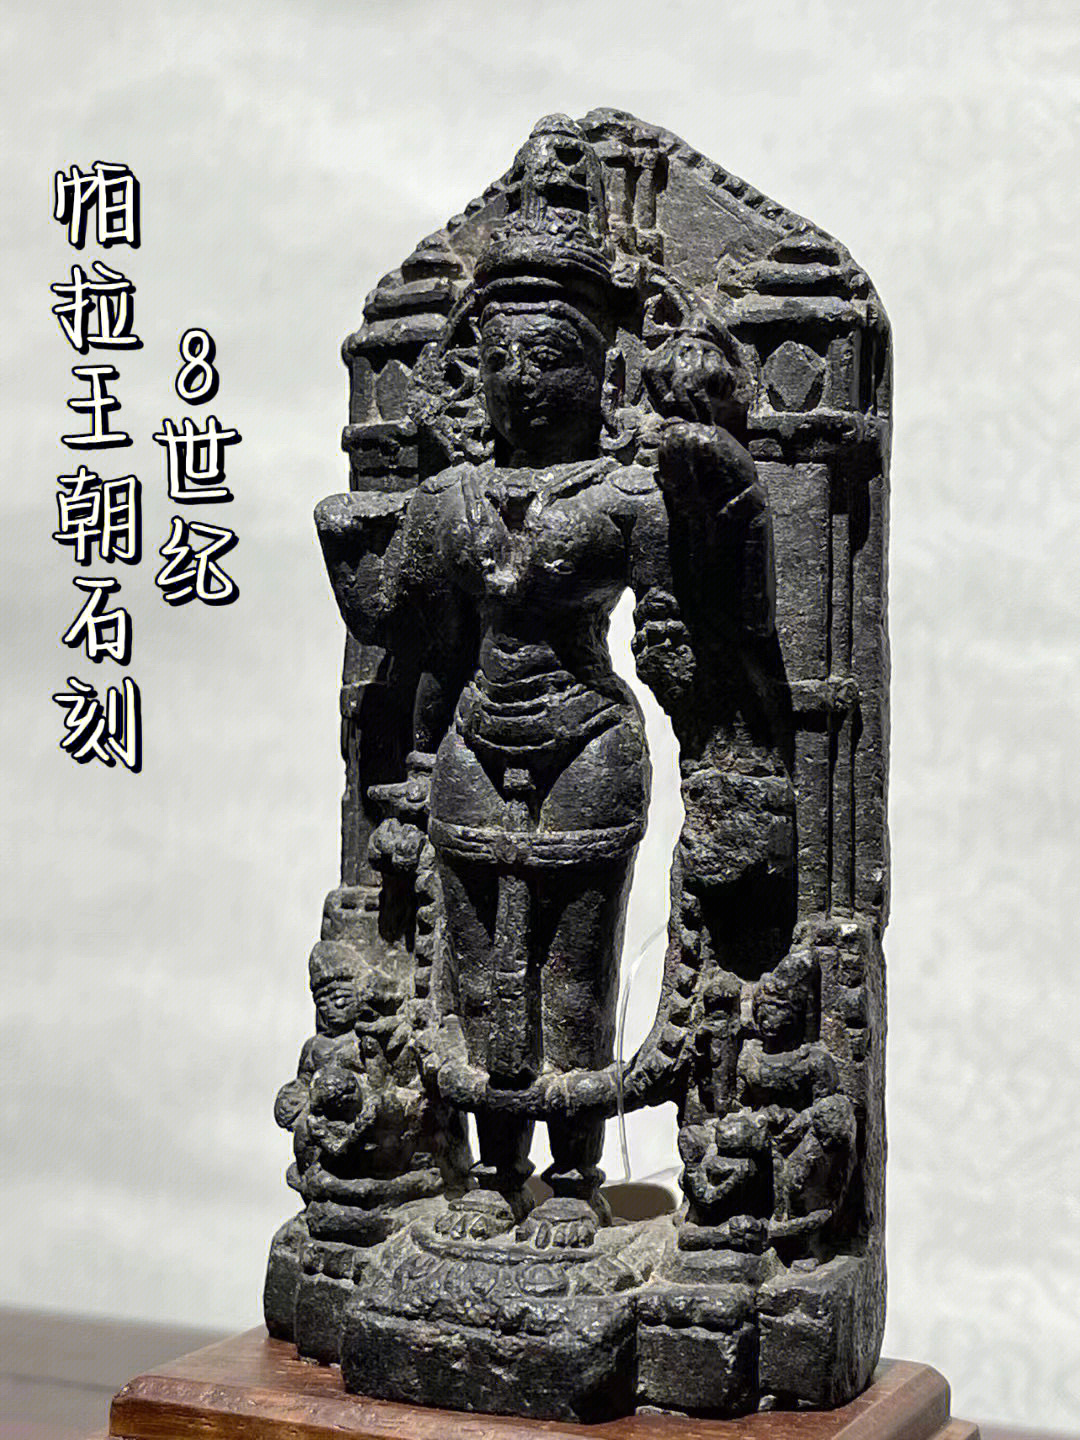 8世纪帕拉王朝石刻菩萨像